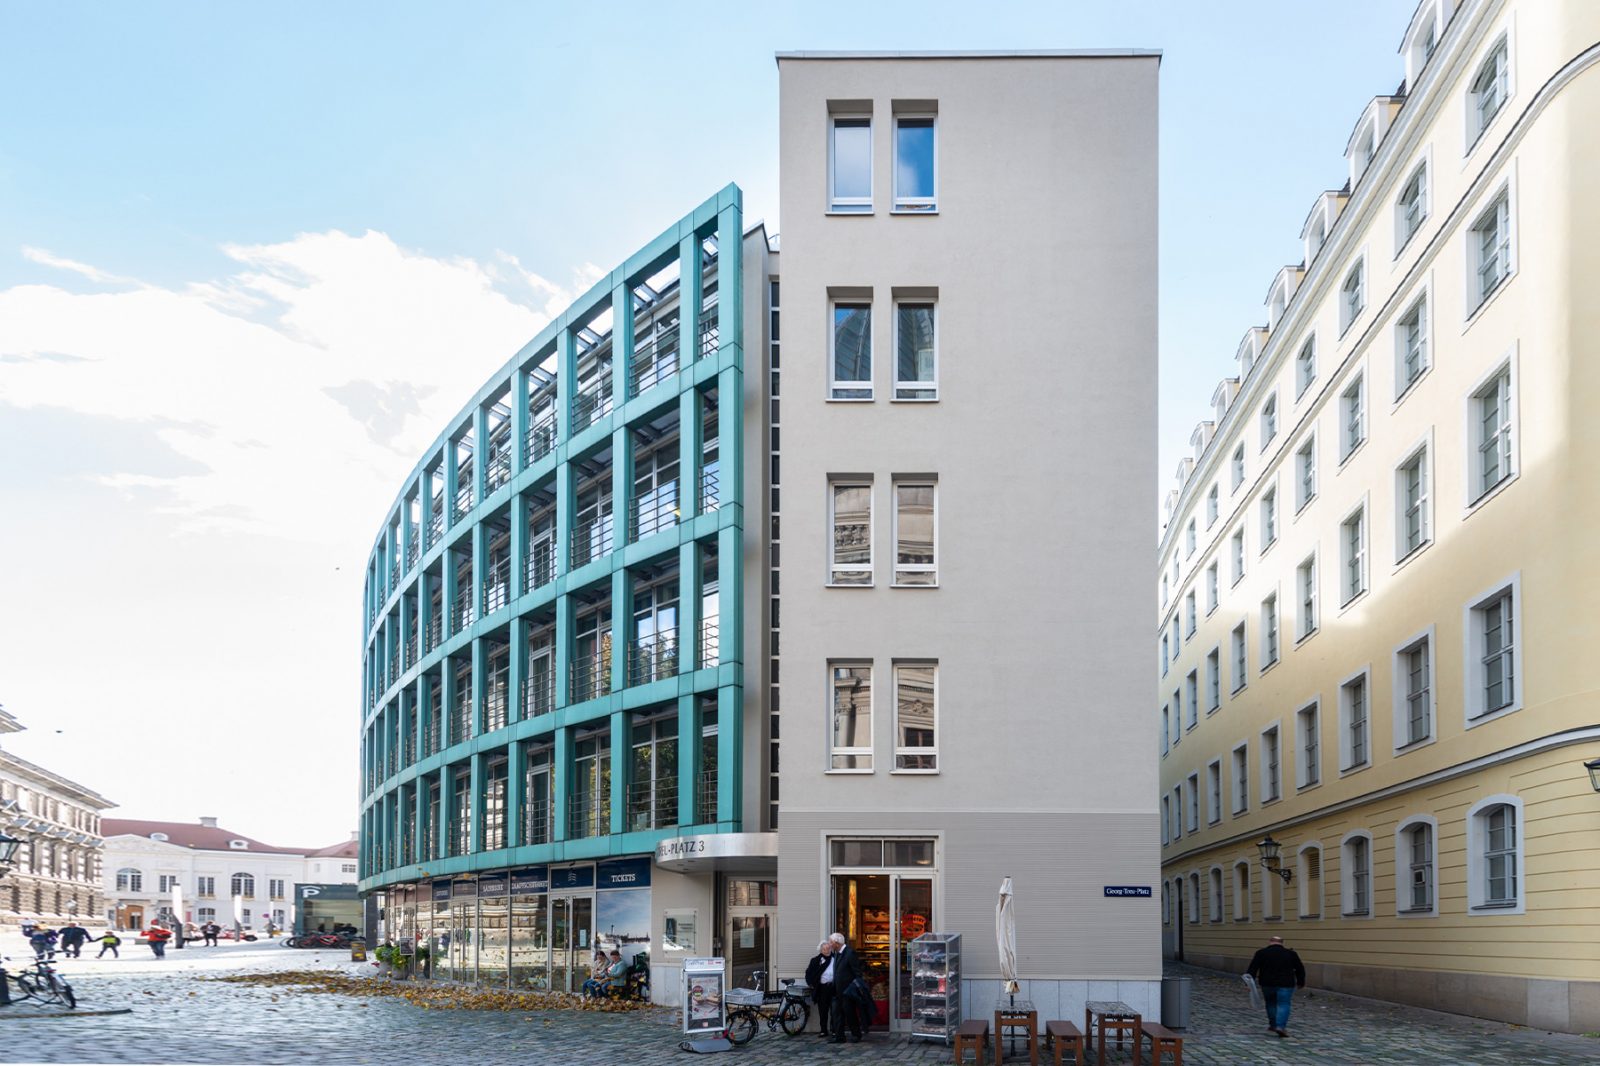 NHzwo_Coselpalais-Fassadensanierung_01_Eingang-Georg-Treu-Platz